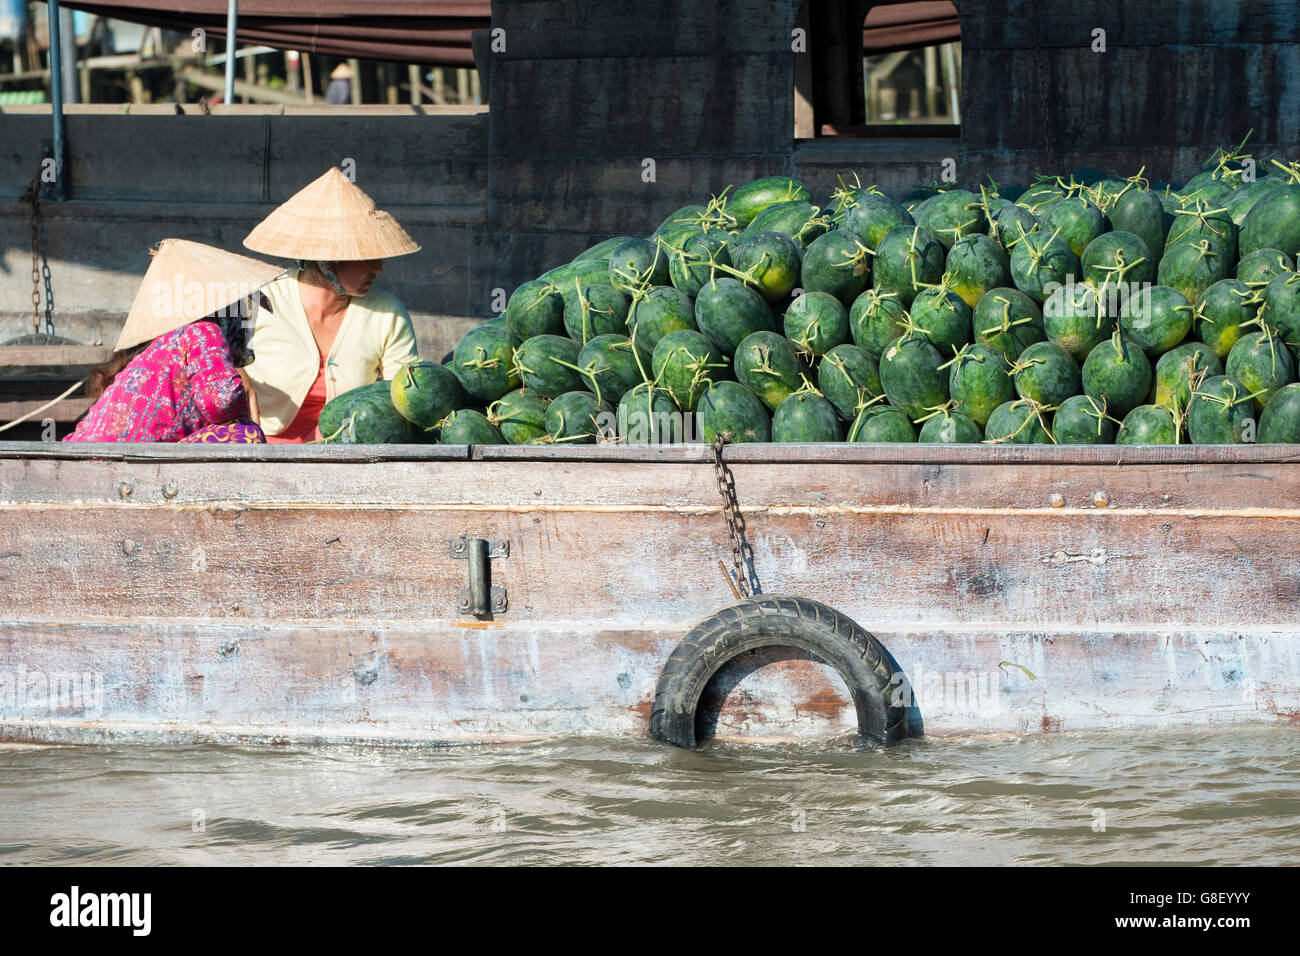 Les melons d'eau pour la vente au marché flottant de Cai Rang, district de Cai Rang, Can Tho, Delta du Mékong, Vietnam Banque D'Images